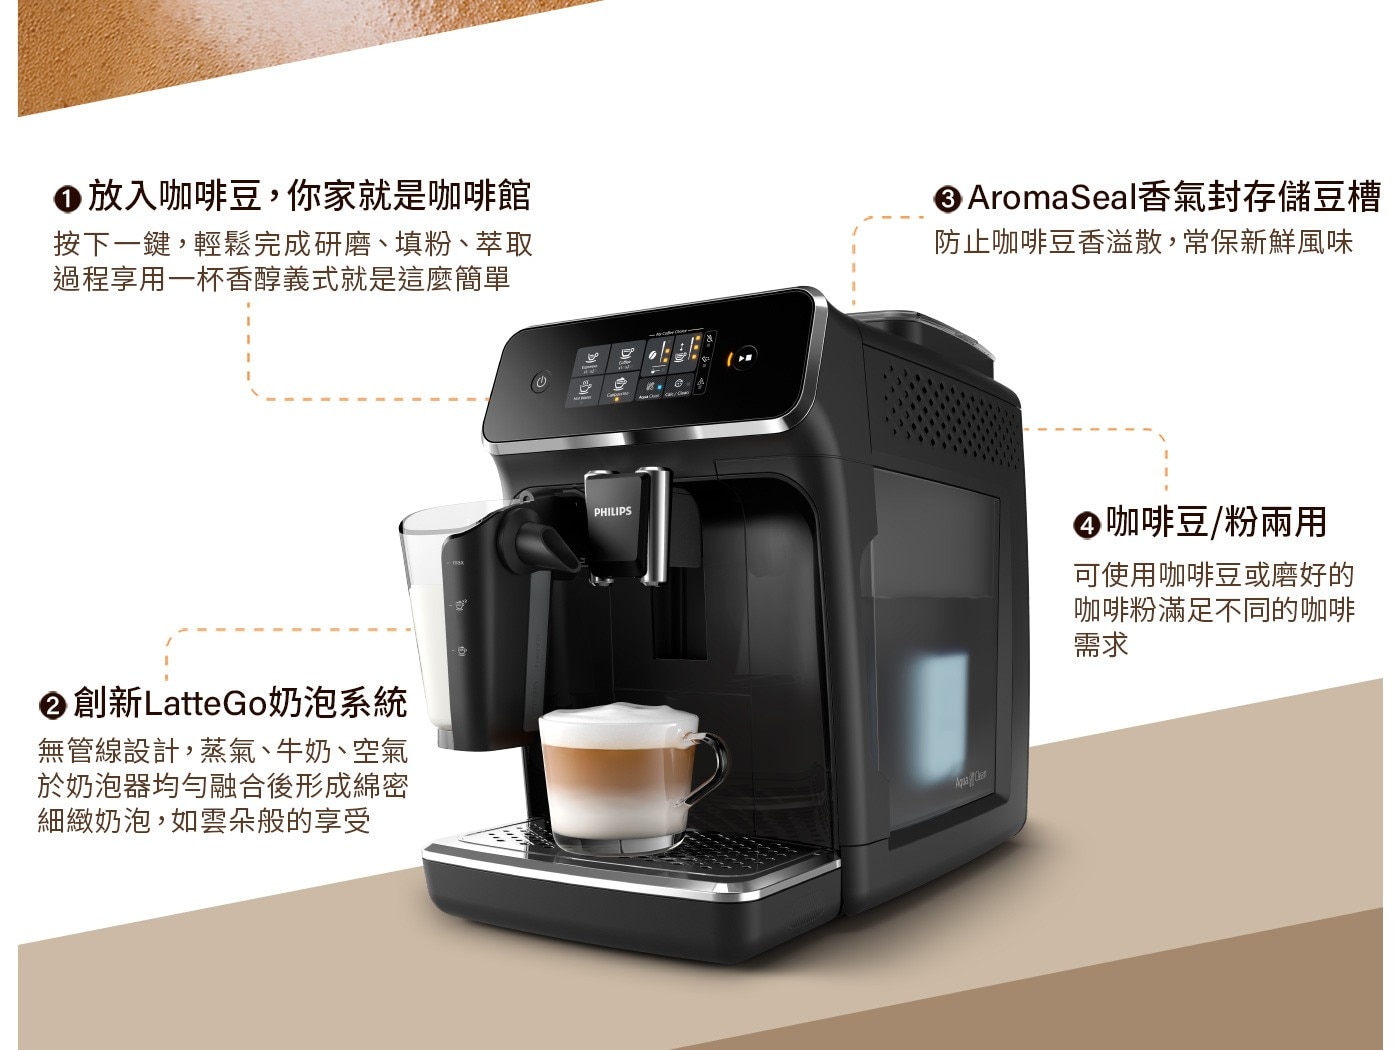 飛利浦全自動義式咖啡機EP2231，一鍵享用香濃卡布奇諾/義式咖啡，創新LatteGo奶泡系統，無管線設計，15秒快速清潔。LatteGo 採用漩渦式奶泡技術，以每秒 394 公尺的速度釋放強勁的蒸汽微泡，製造濃厚而綿密的奶泡。彈指之間即可享用3種咖啡，義式濃縮、美式咖啡或以牛奶為底的特調飲品。